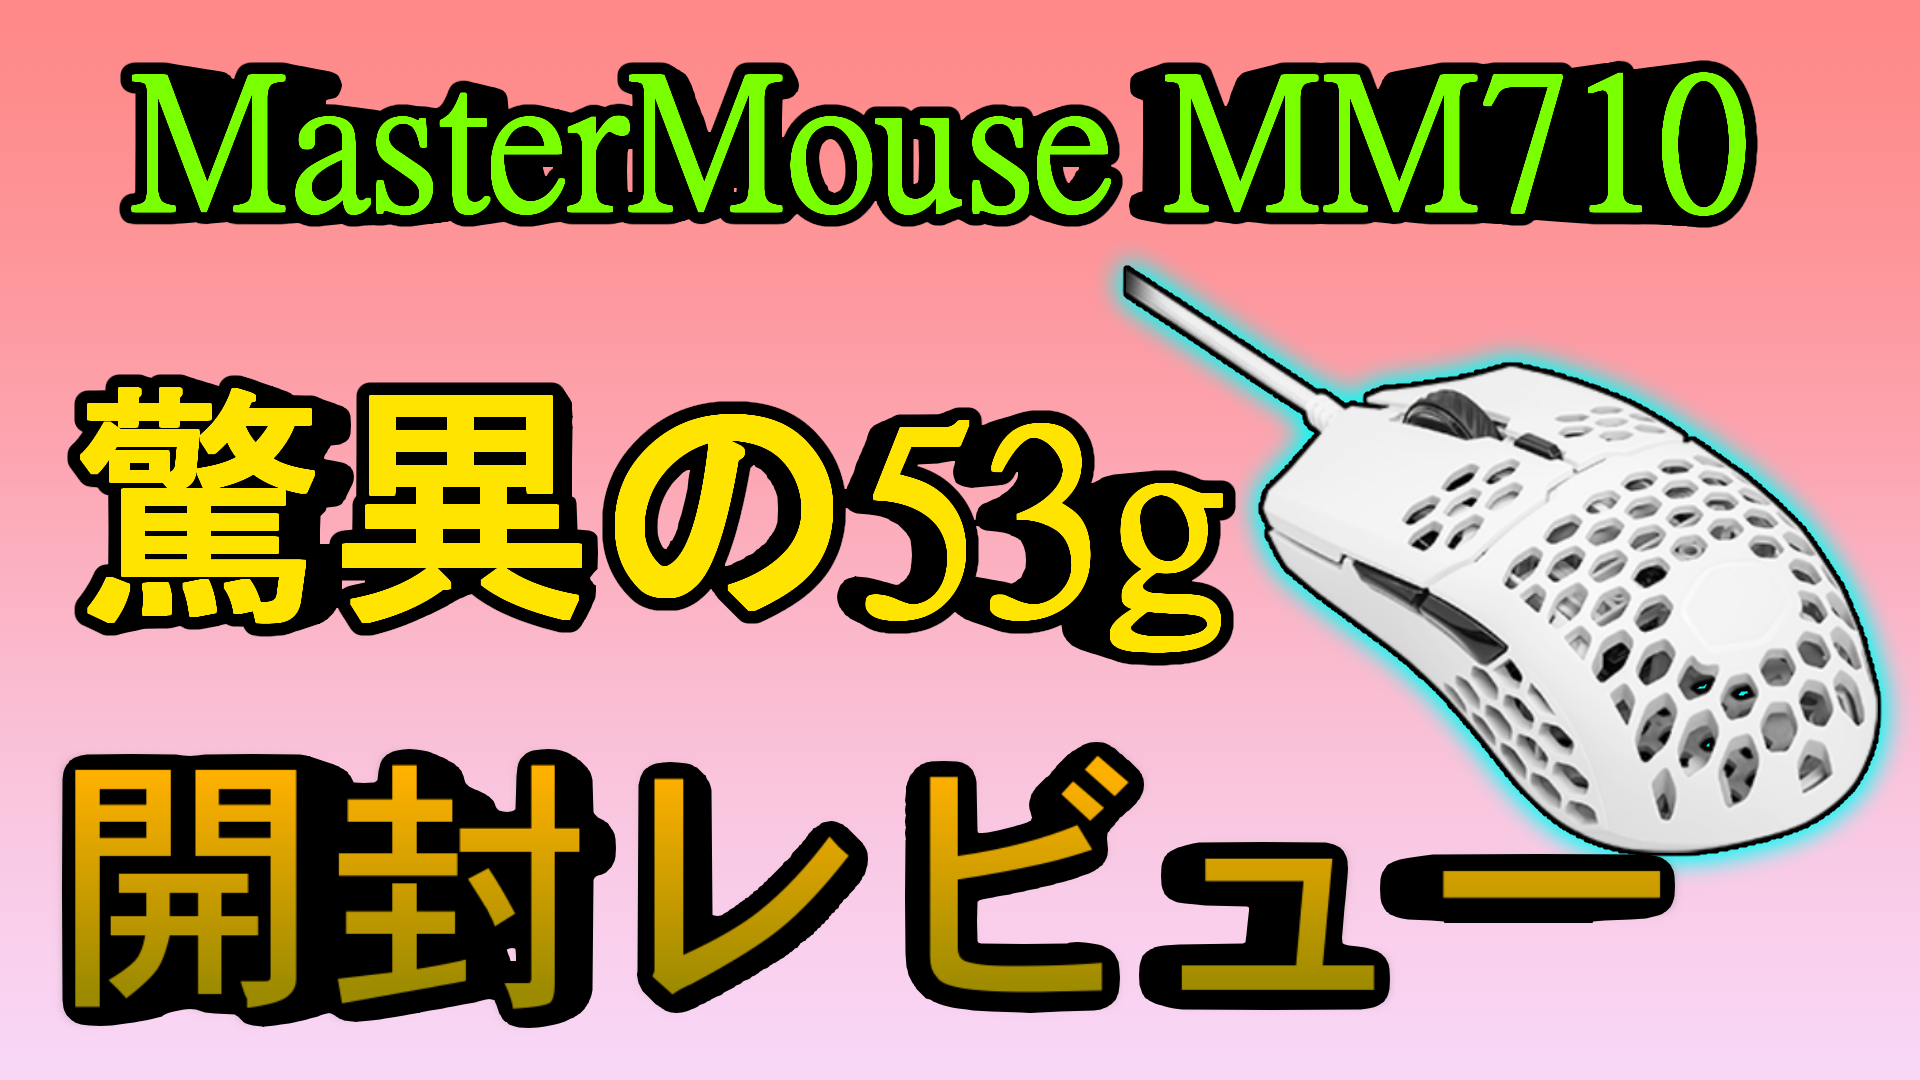 レビュー コスパ抜群なのに驚異の53g Mastermouse Mm710 ミノケンジの自由気まま空間